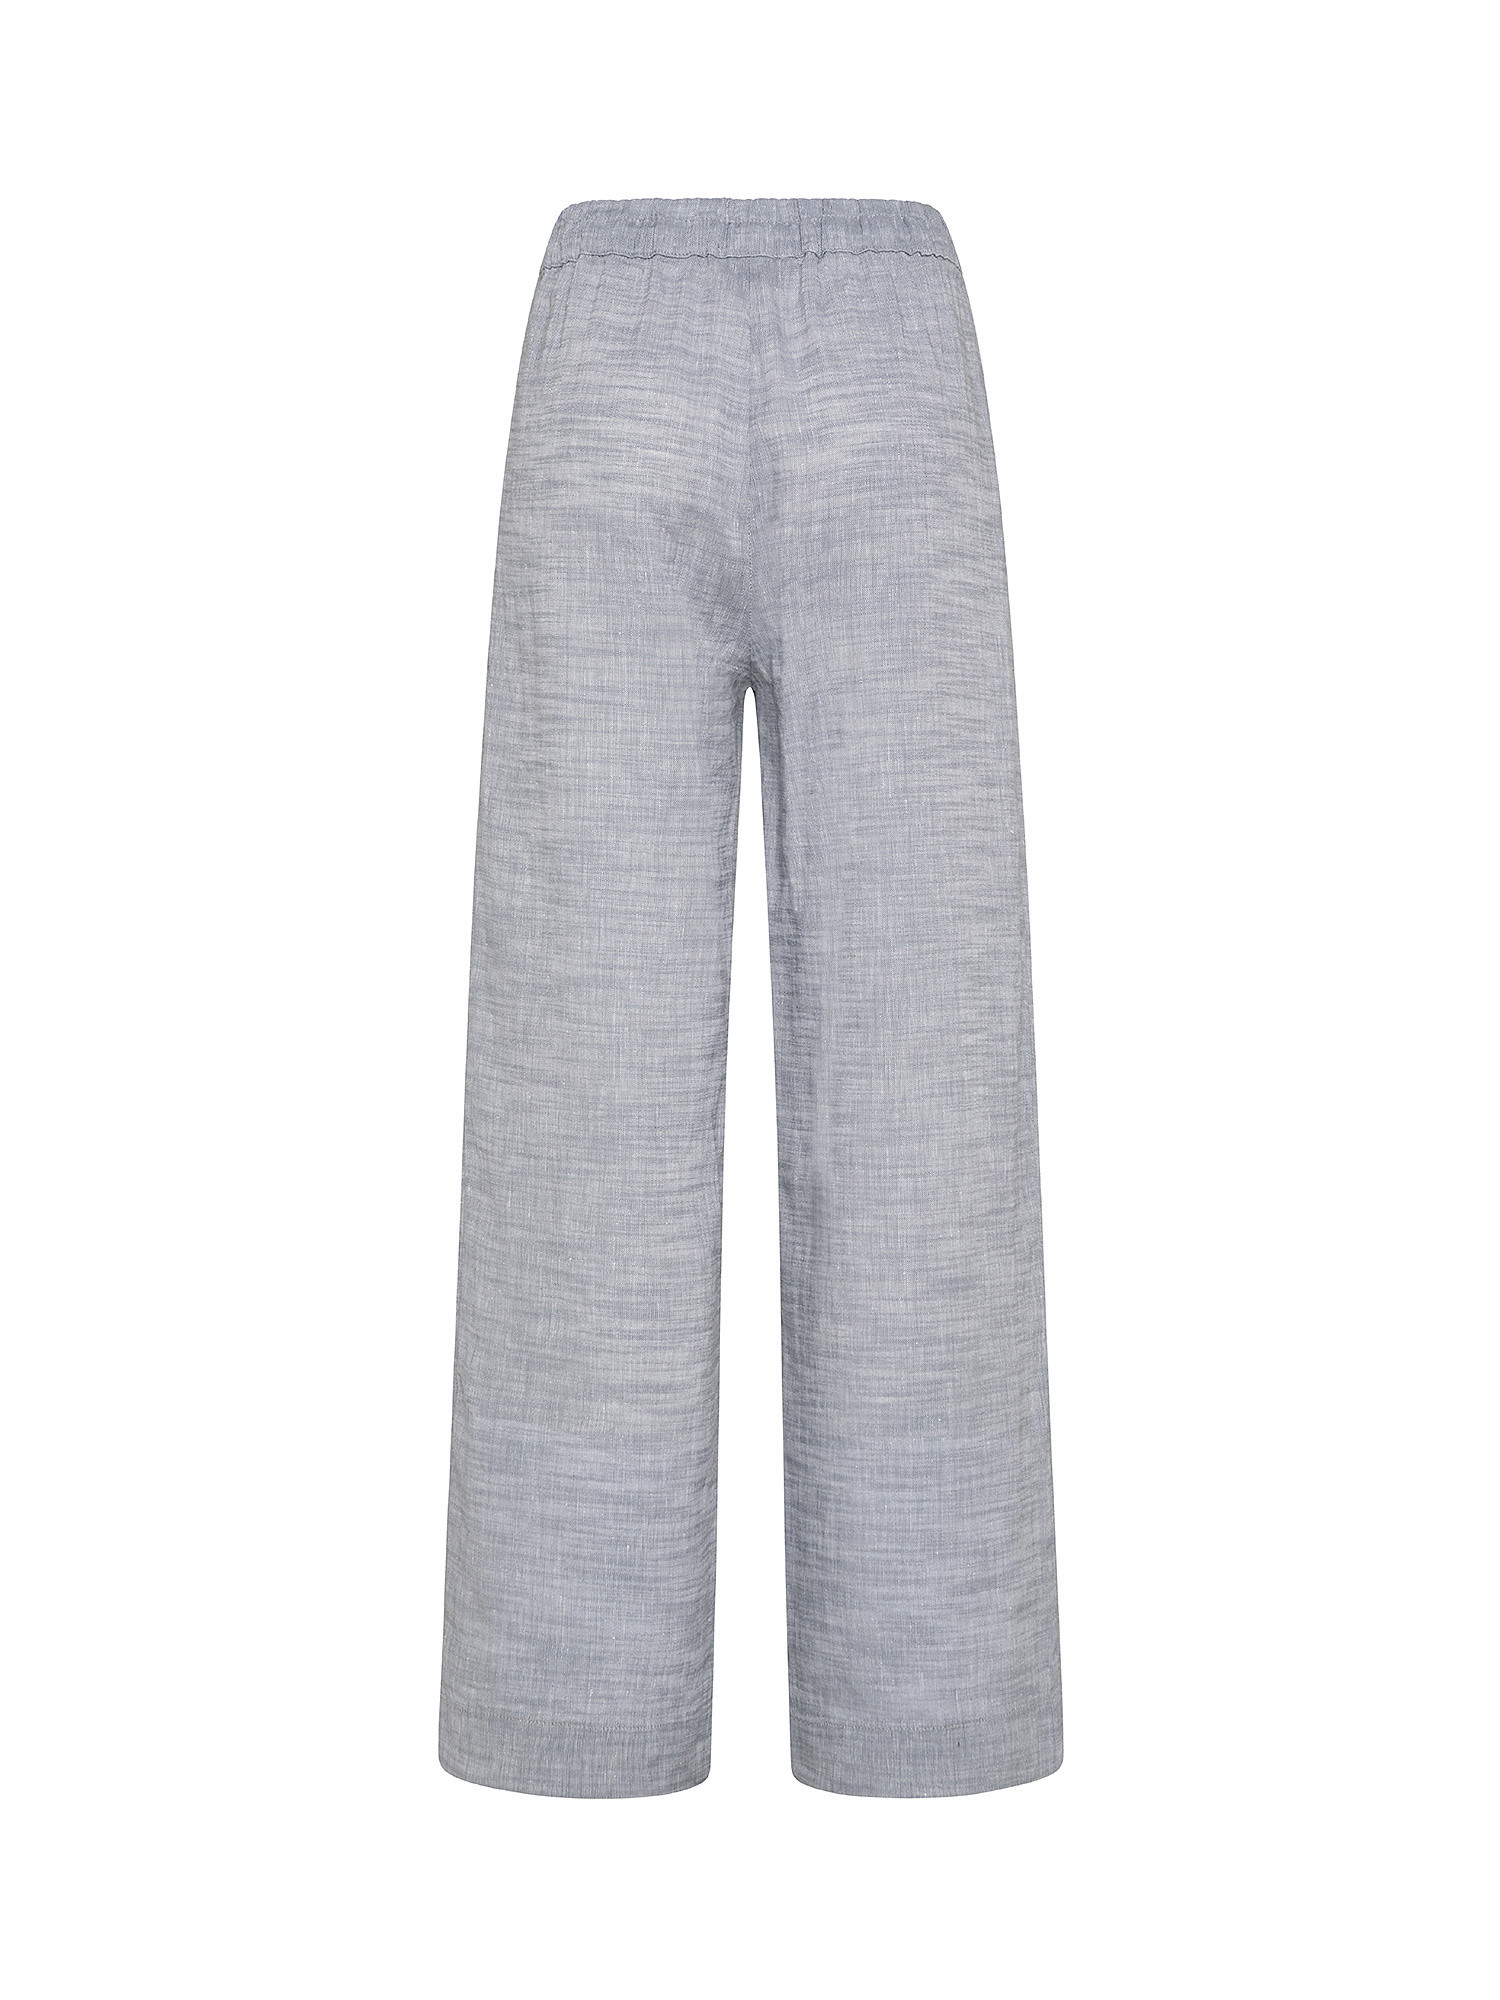 Pant in linen blend, Light Grey, large image number 1